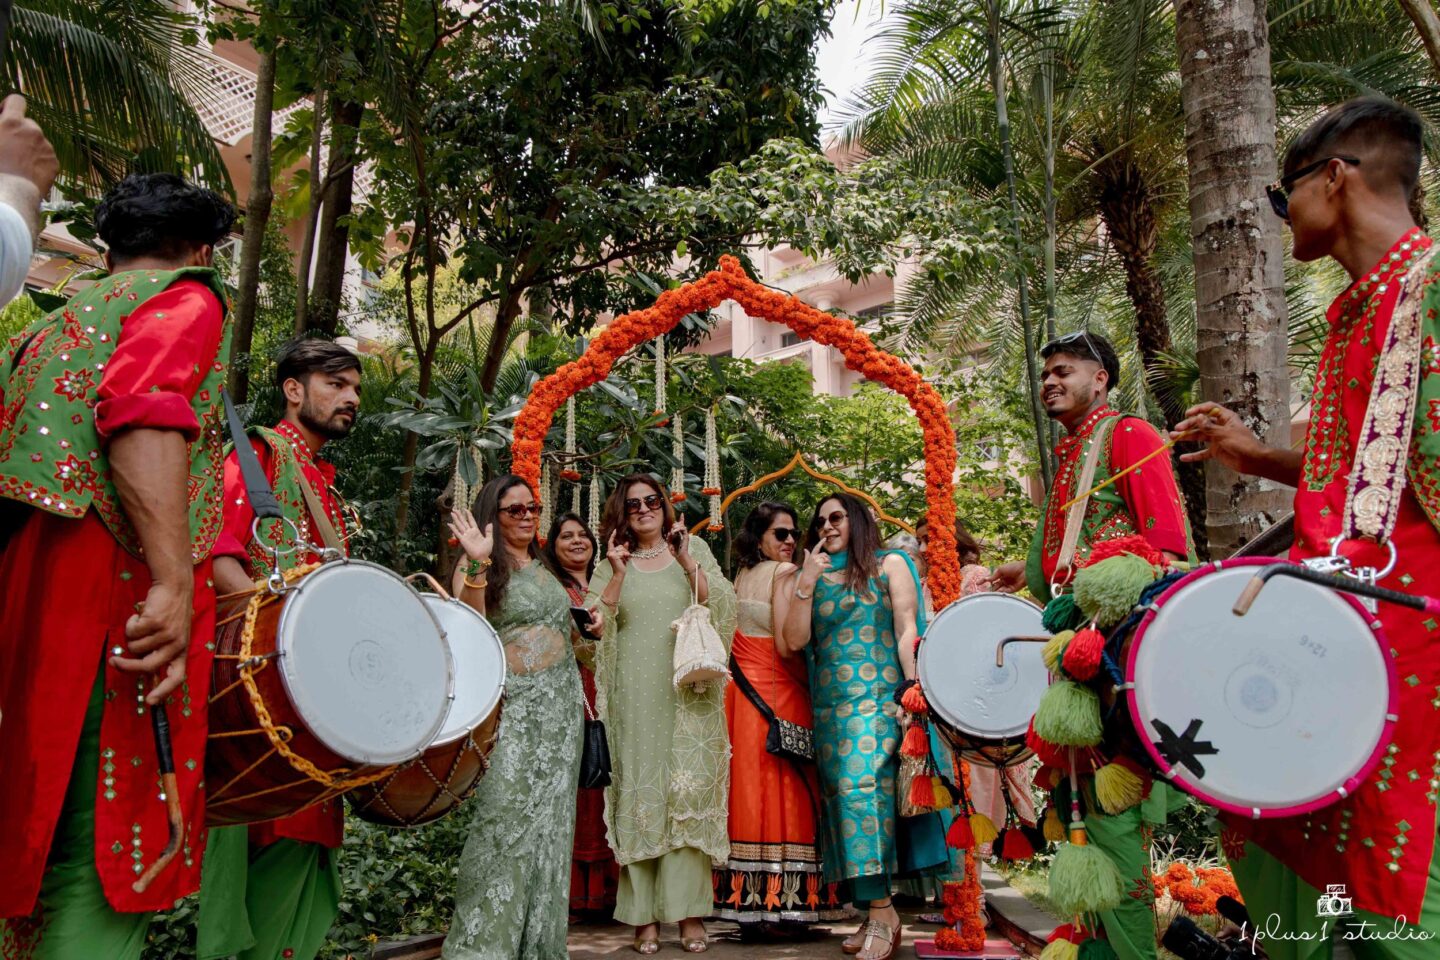 Punjabi Destination Wedding The Leela Palace Bangalore